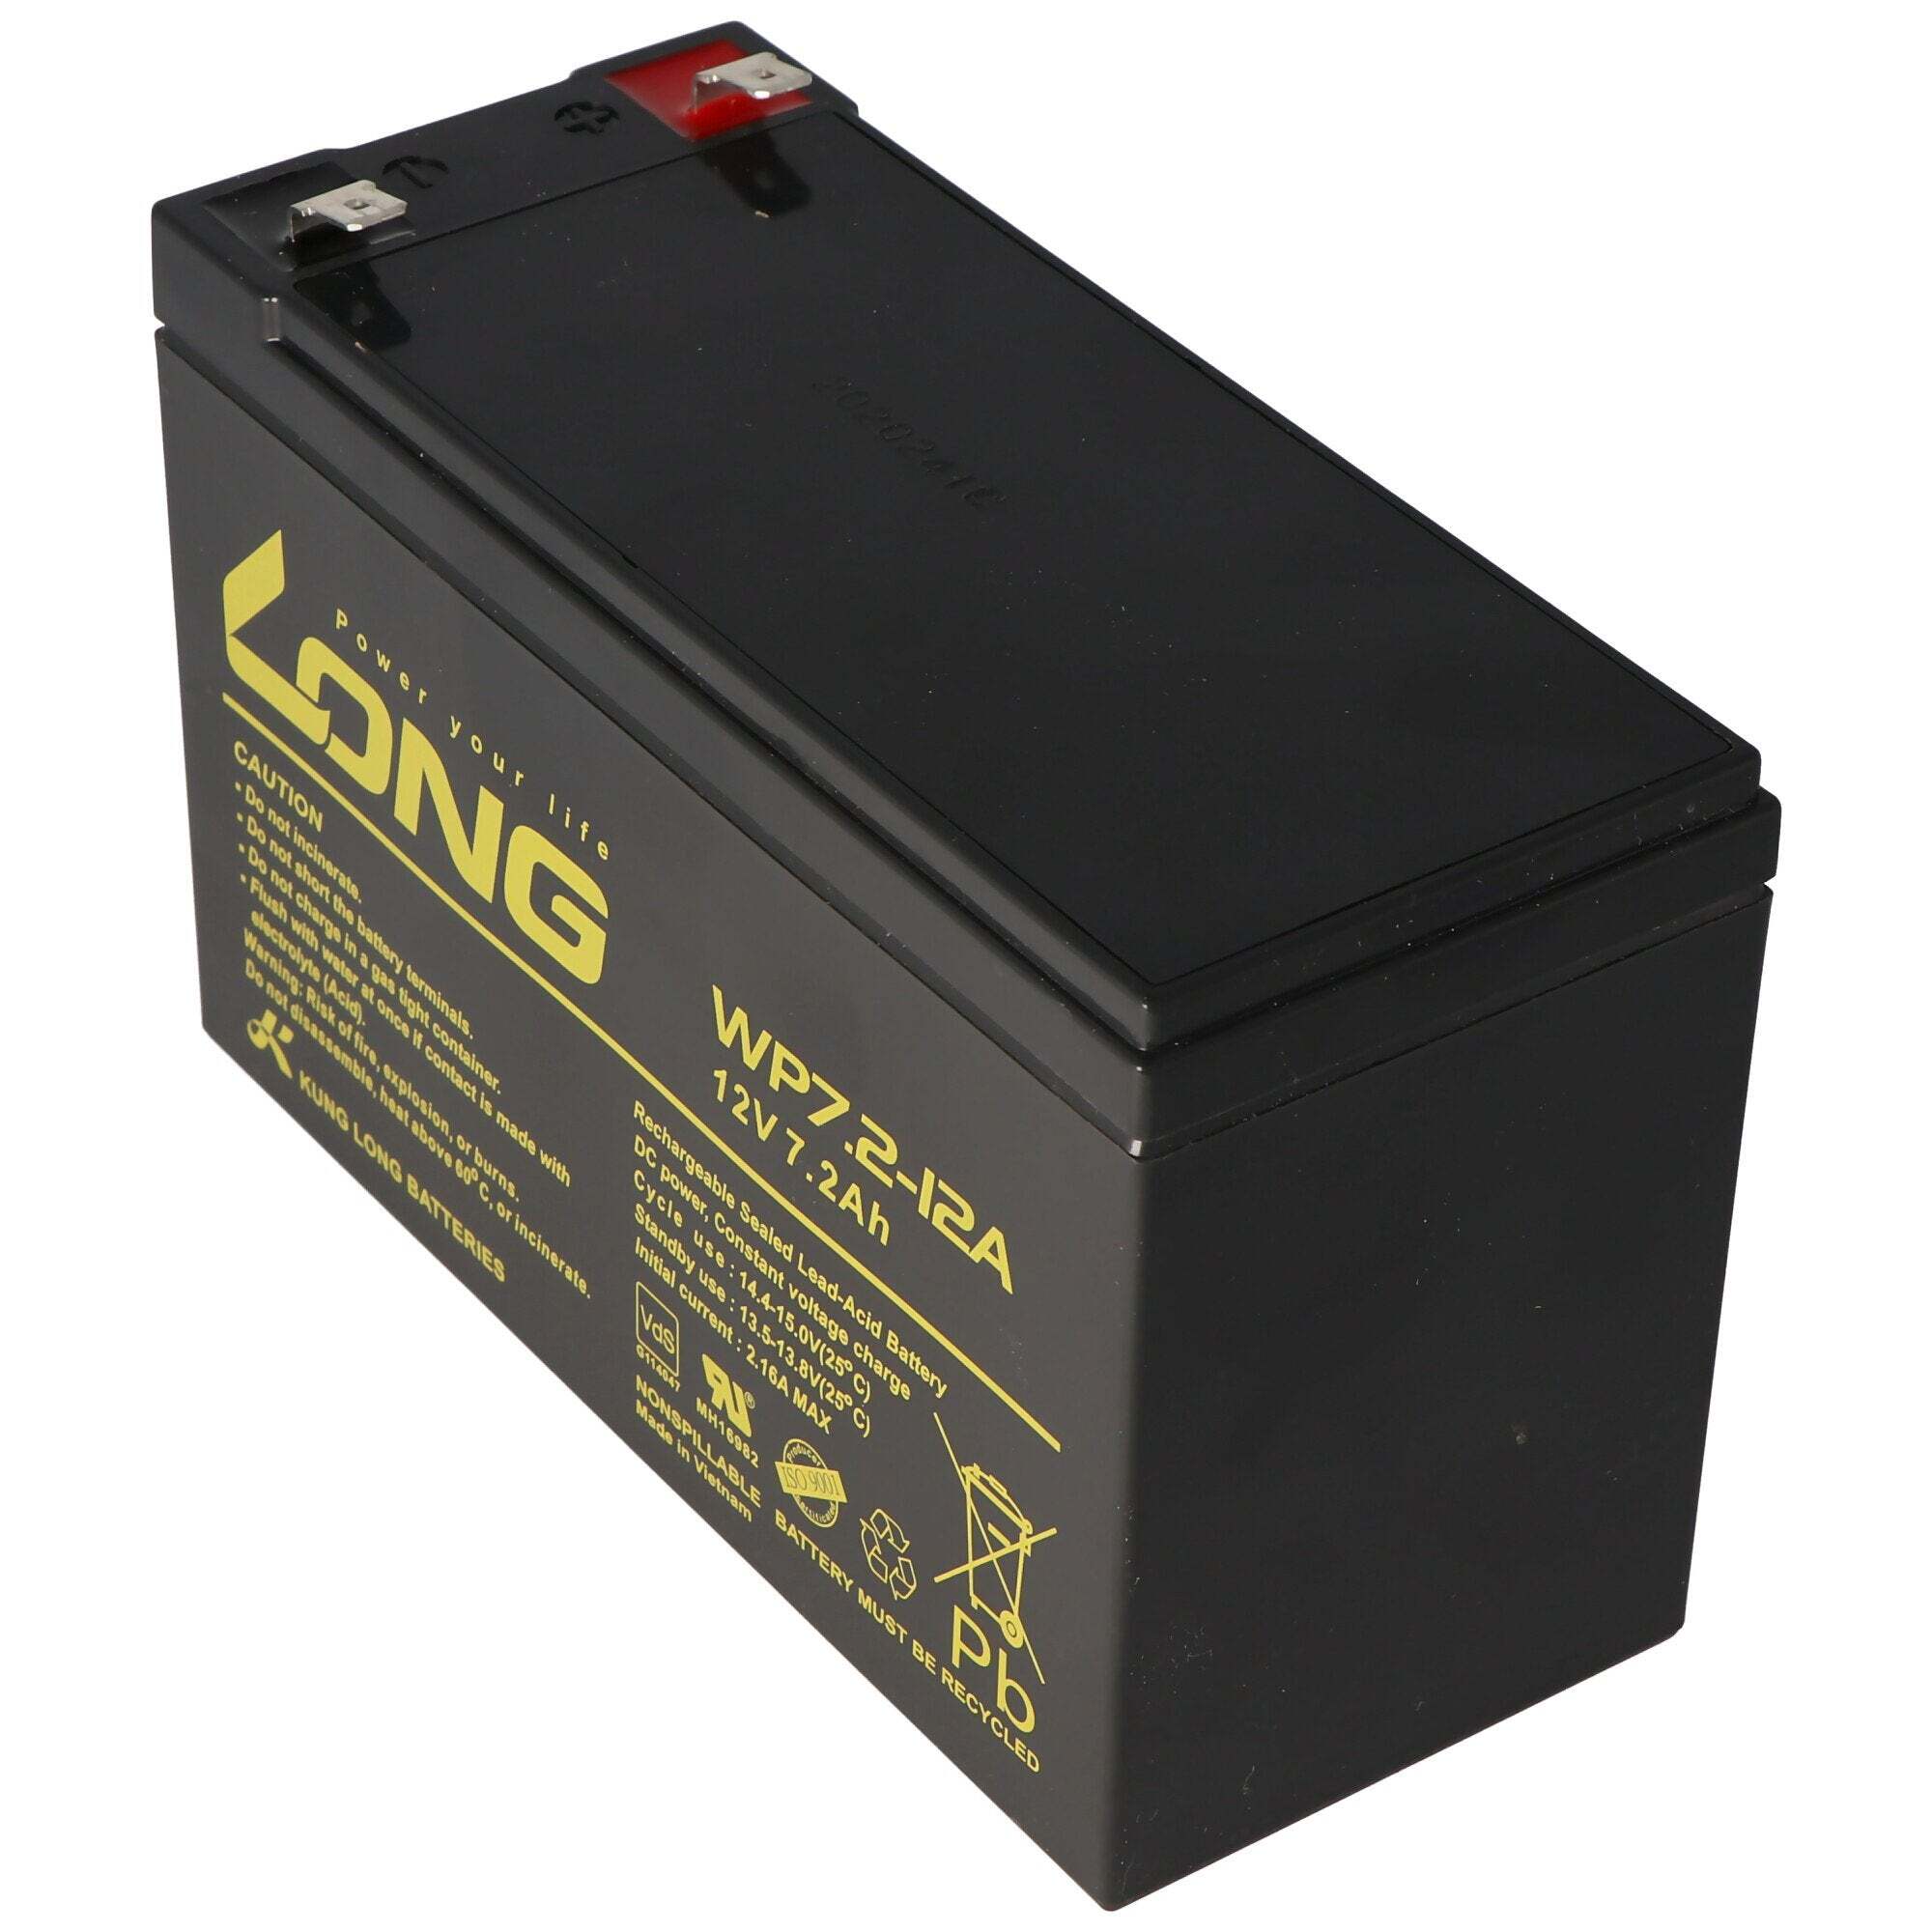 ACCUCELL Batterij geschikt voor de batterij van het Steripower-desinfectieapparaat met 12 volt 7,2 Ah, multip